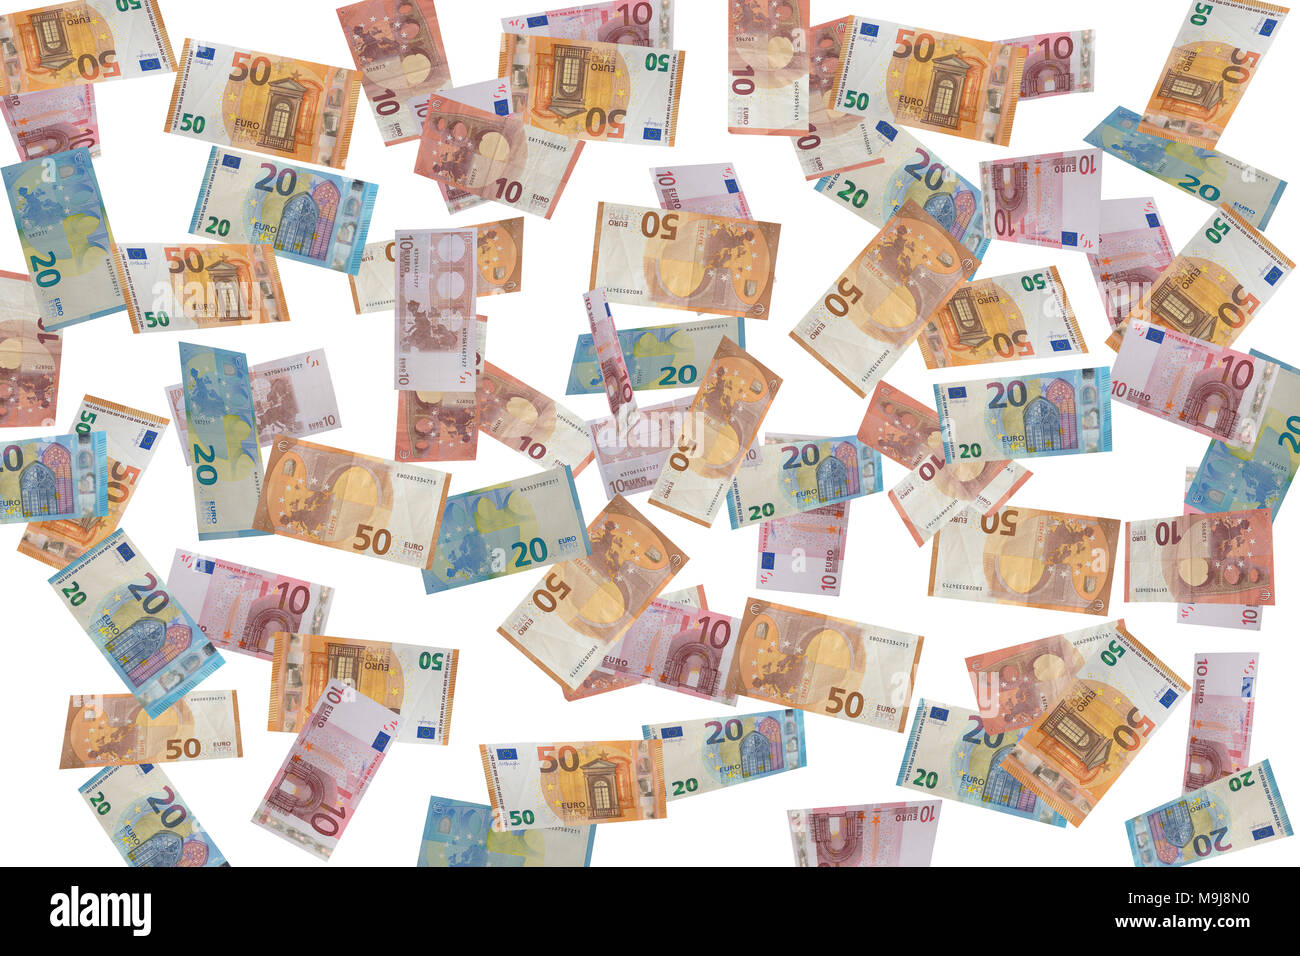 Konzept Bild der europäischen Banknoten/Geld fallen Stockfoto